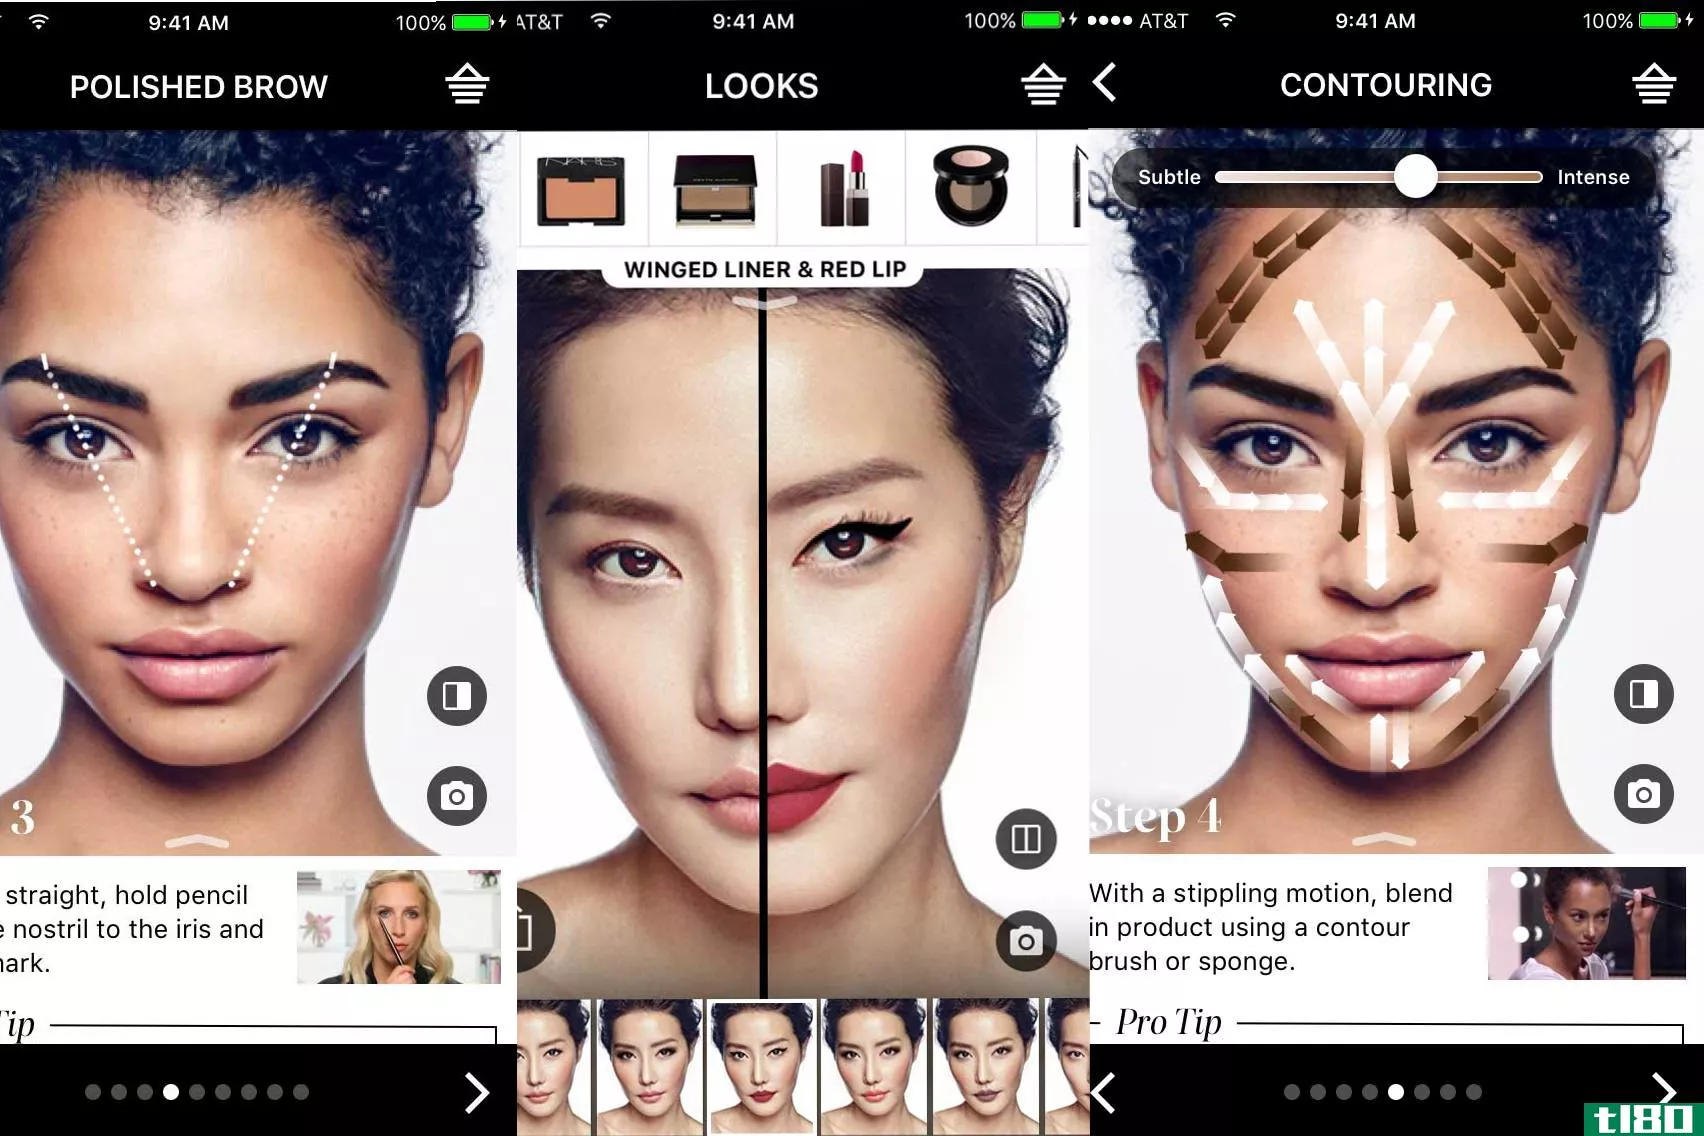 丝芙兰最新的应用程序更新让你可以尝试在家里用ar虚拟化妆